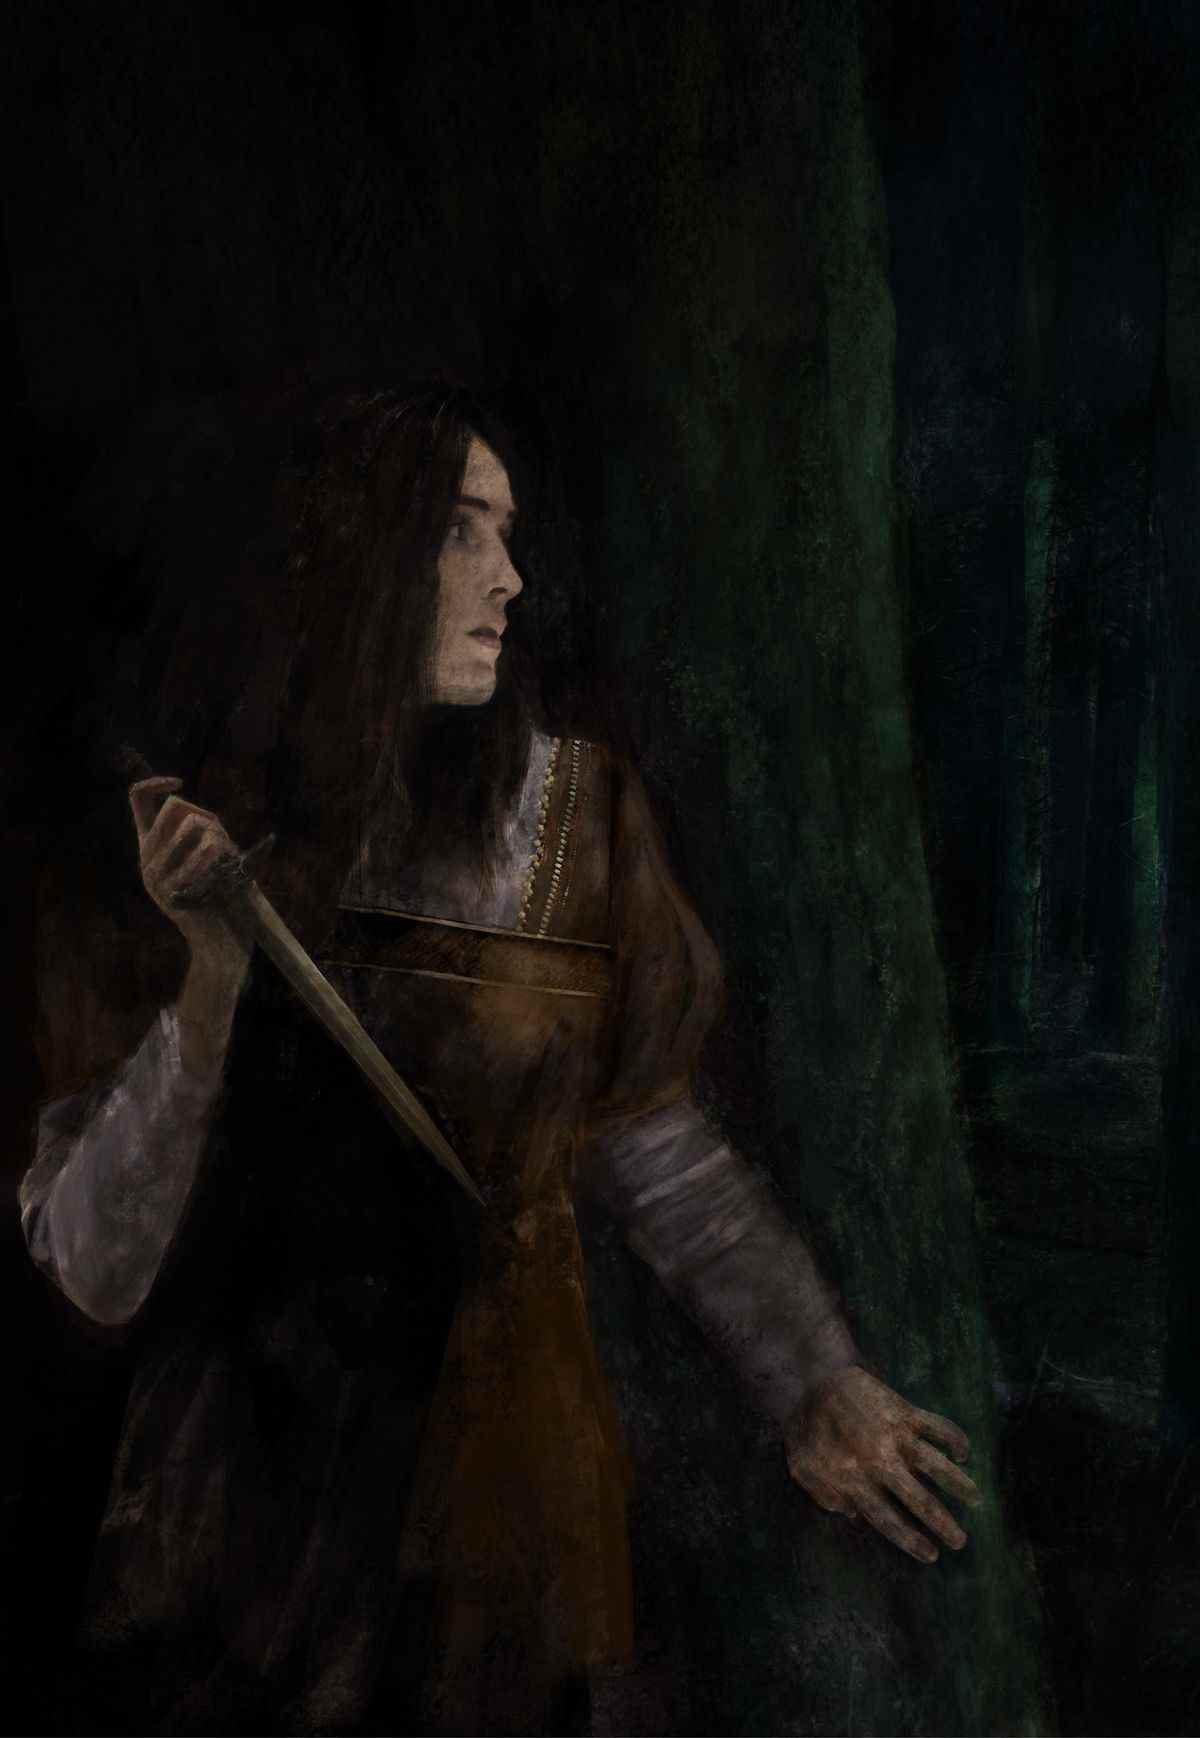 Dans un bois faiblement éclairé, une femme tient une dague sur sa poitrine, cachée derrière un arbre.  L'obscurité est vide et ses yeux sont silencieux.